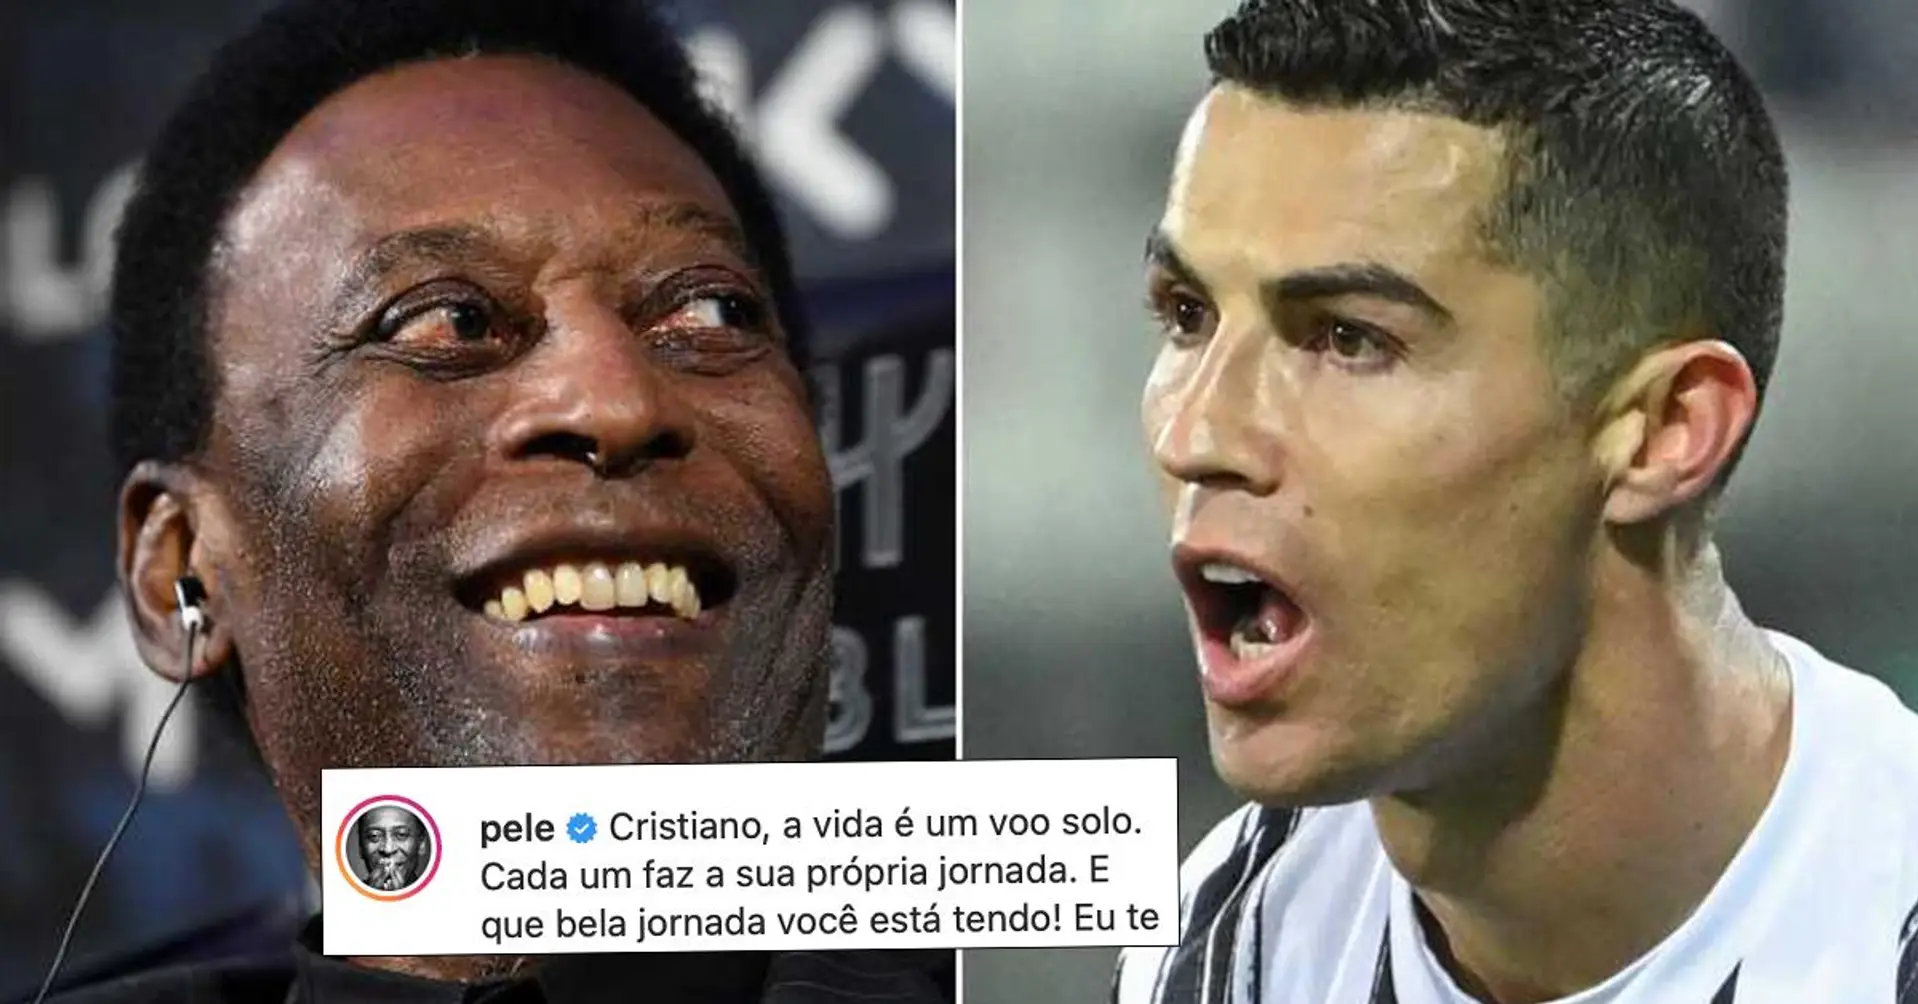 Pele antwortet, nachdem Cristiano Ronaldo sich zum Torschützenkönig der Fußballgeschichte erklärt hat